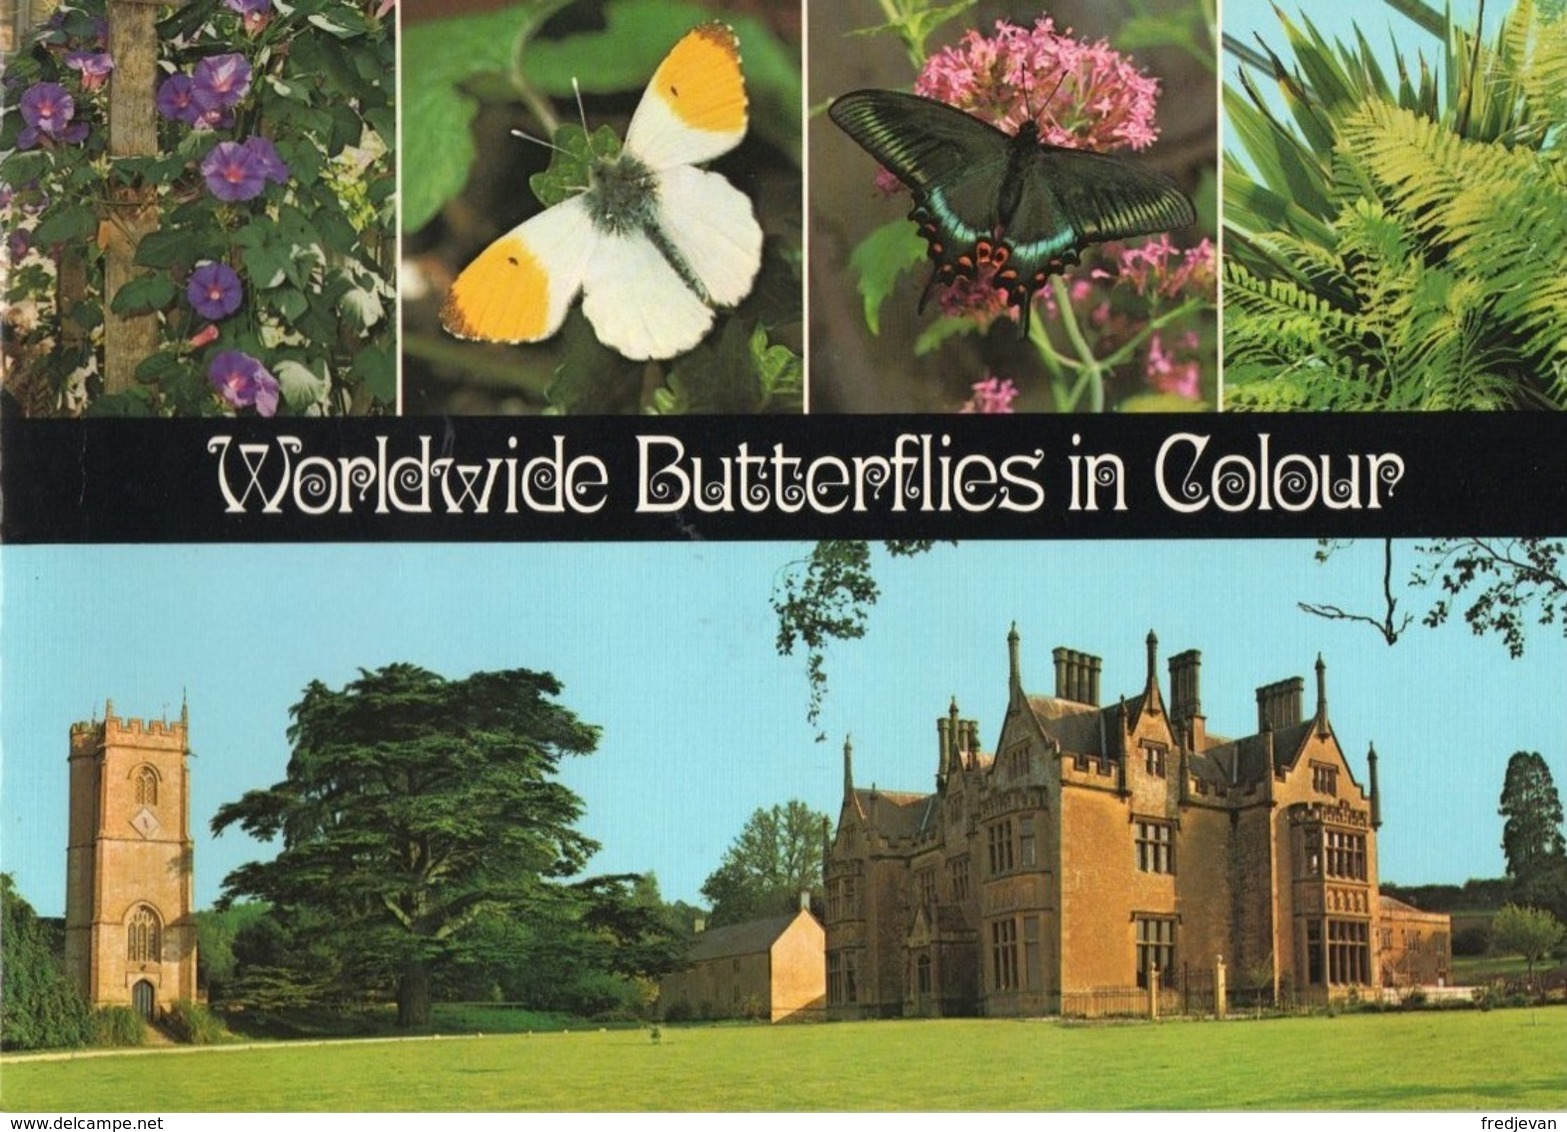 Boek / Worldwide Butterflies In Colour Met Zeer Mooi Foto's (Engels) - Vida Salvaje